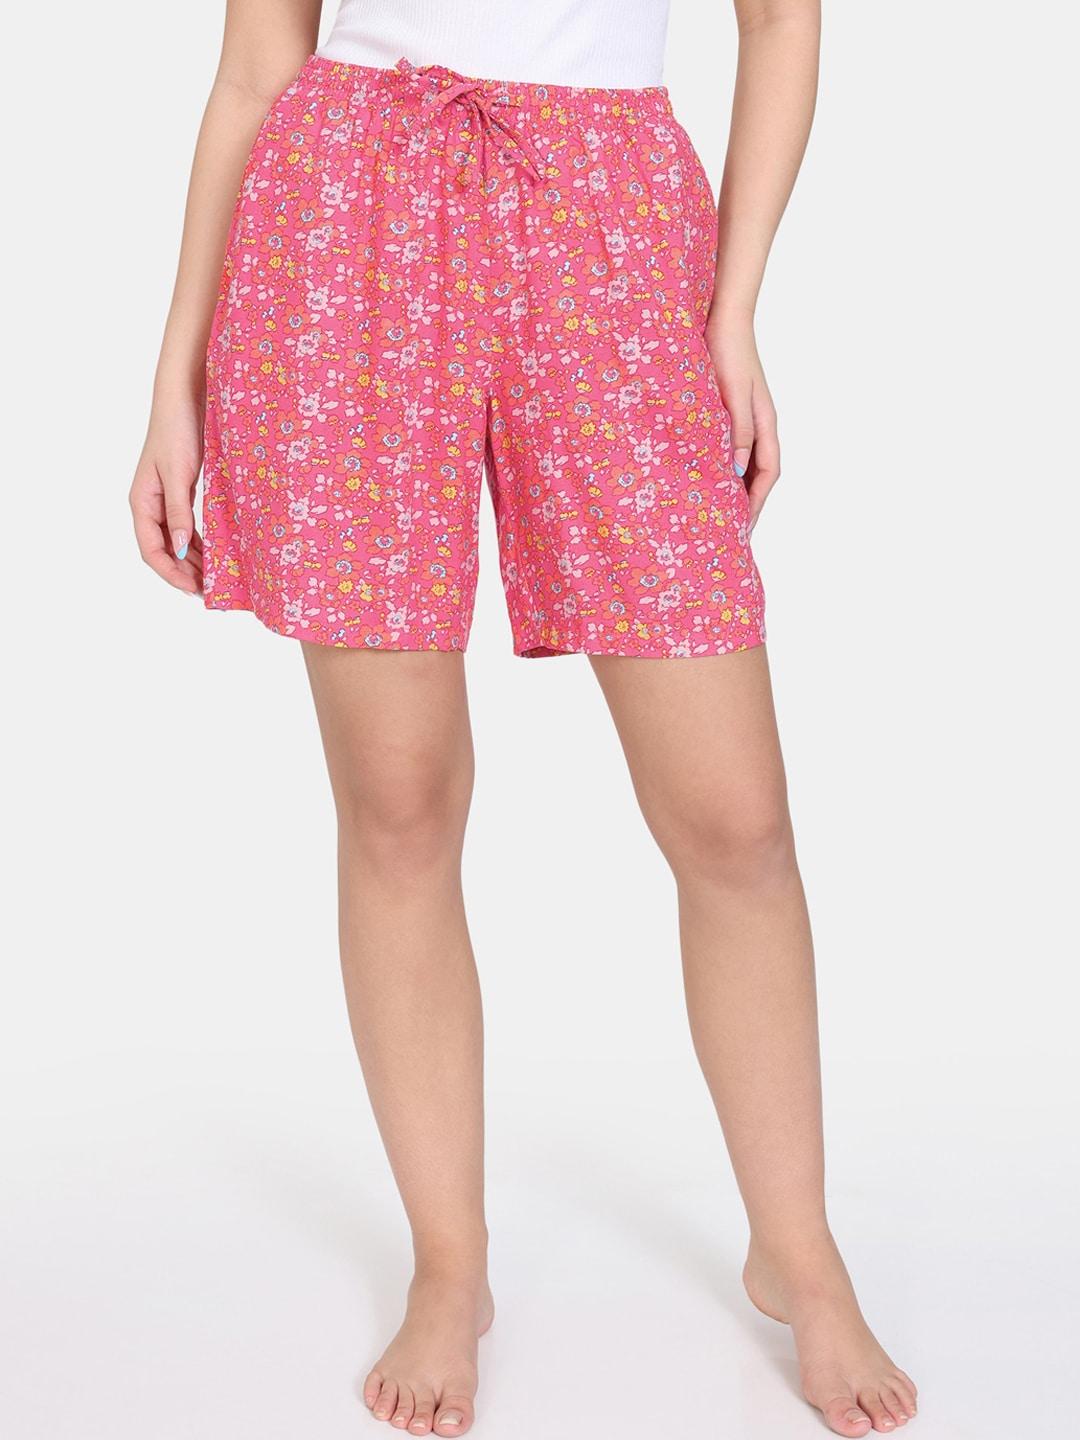 zivame women floral printed regular shorts